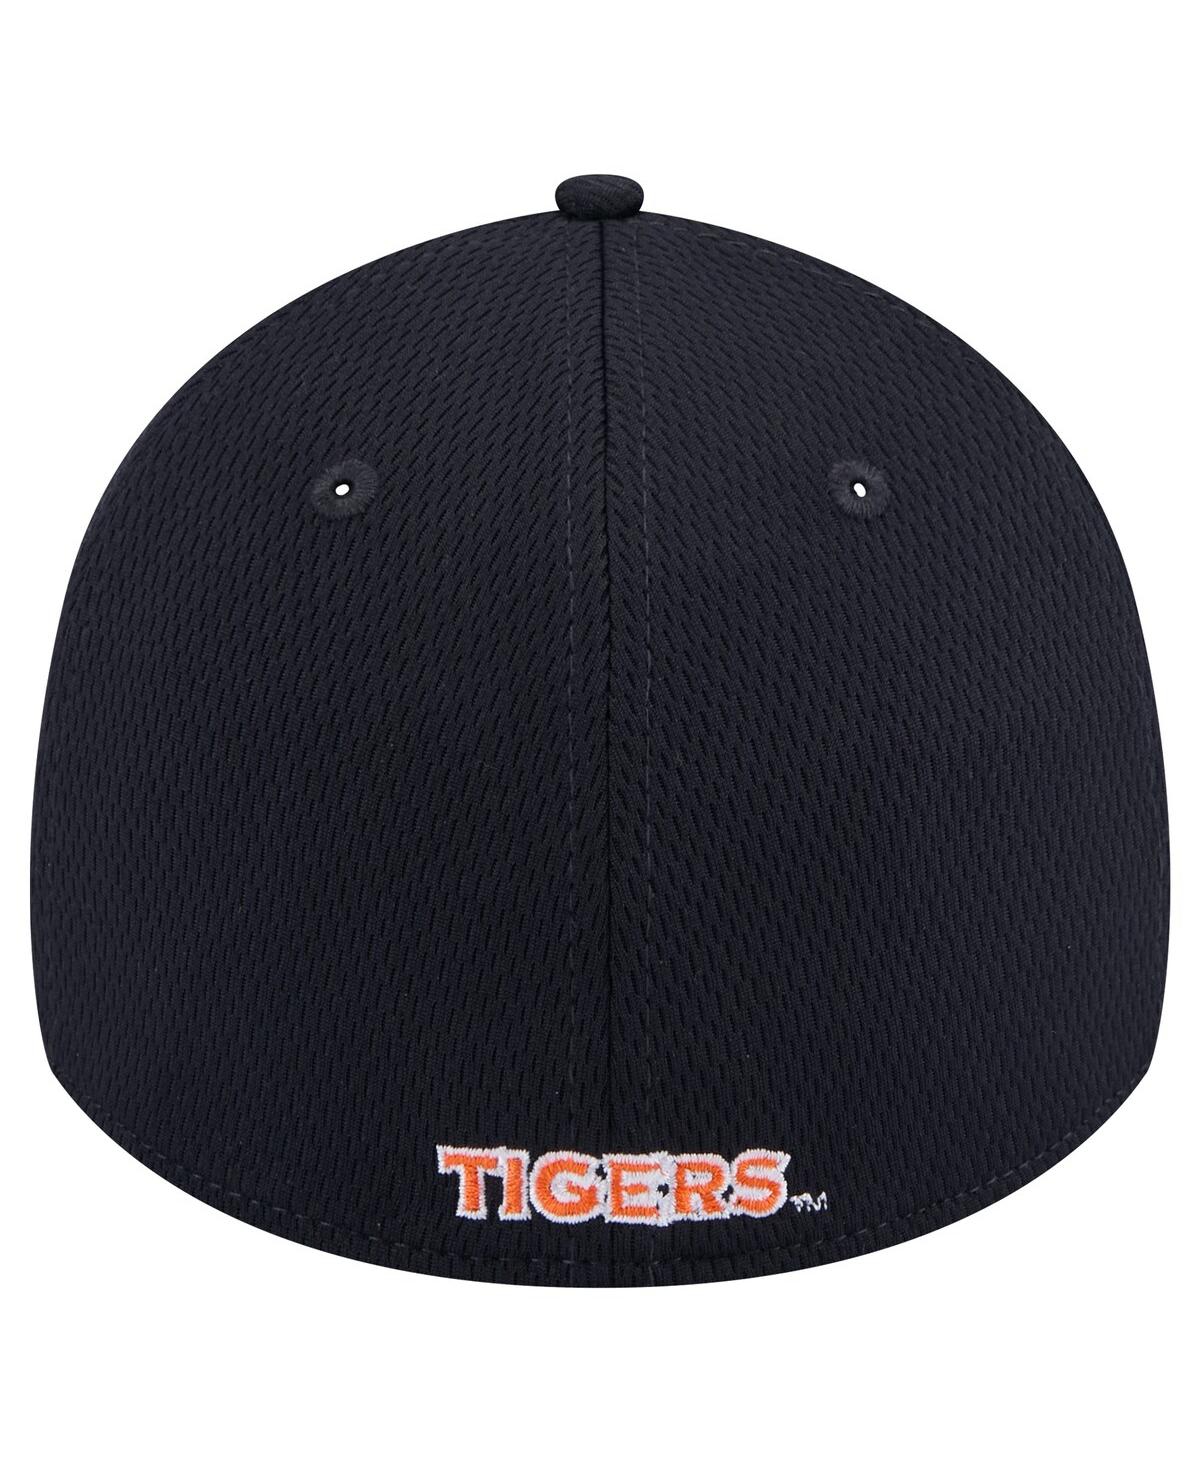 Shop New Era Men's Navy Auburn Tigers Active Slash Sides 39thirty Flex Hat